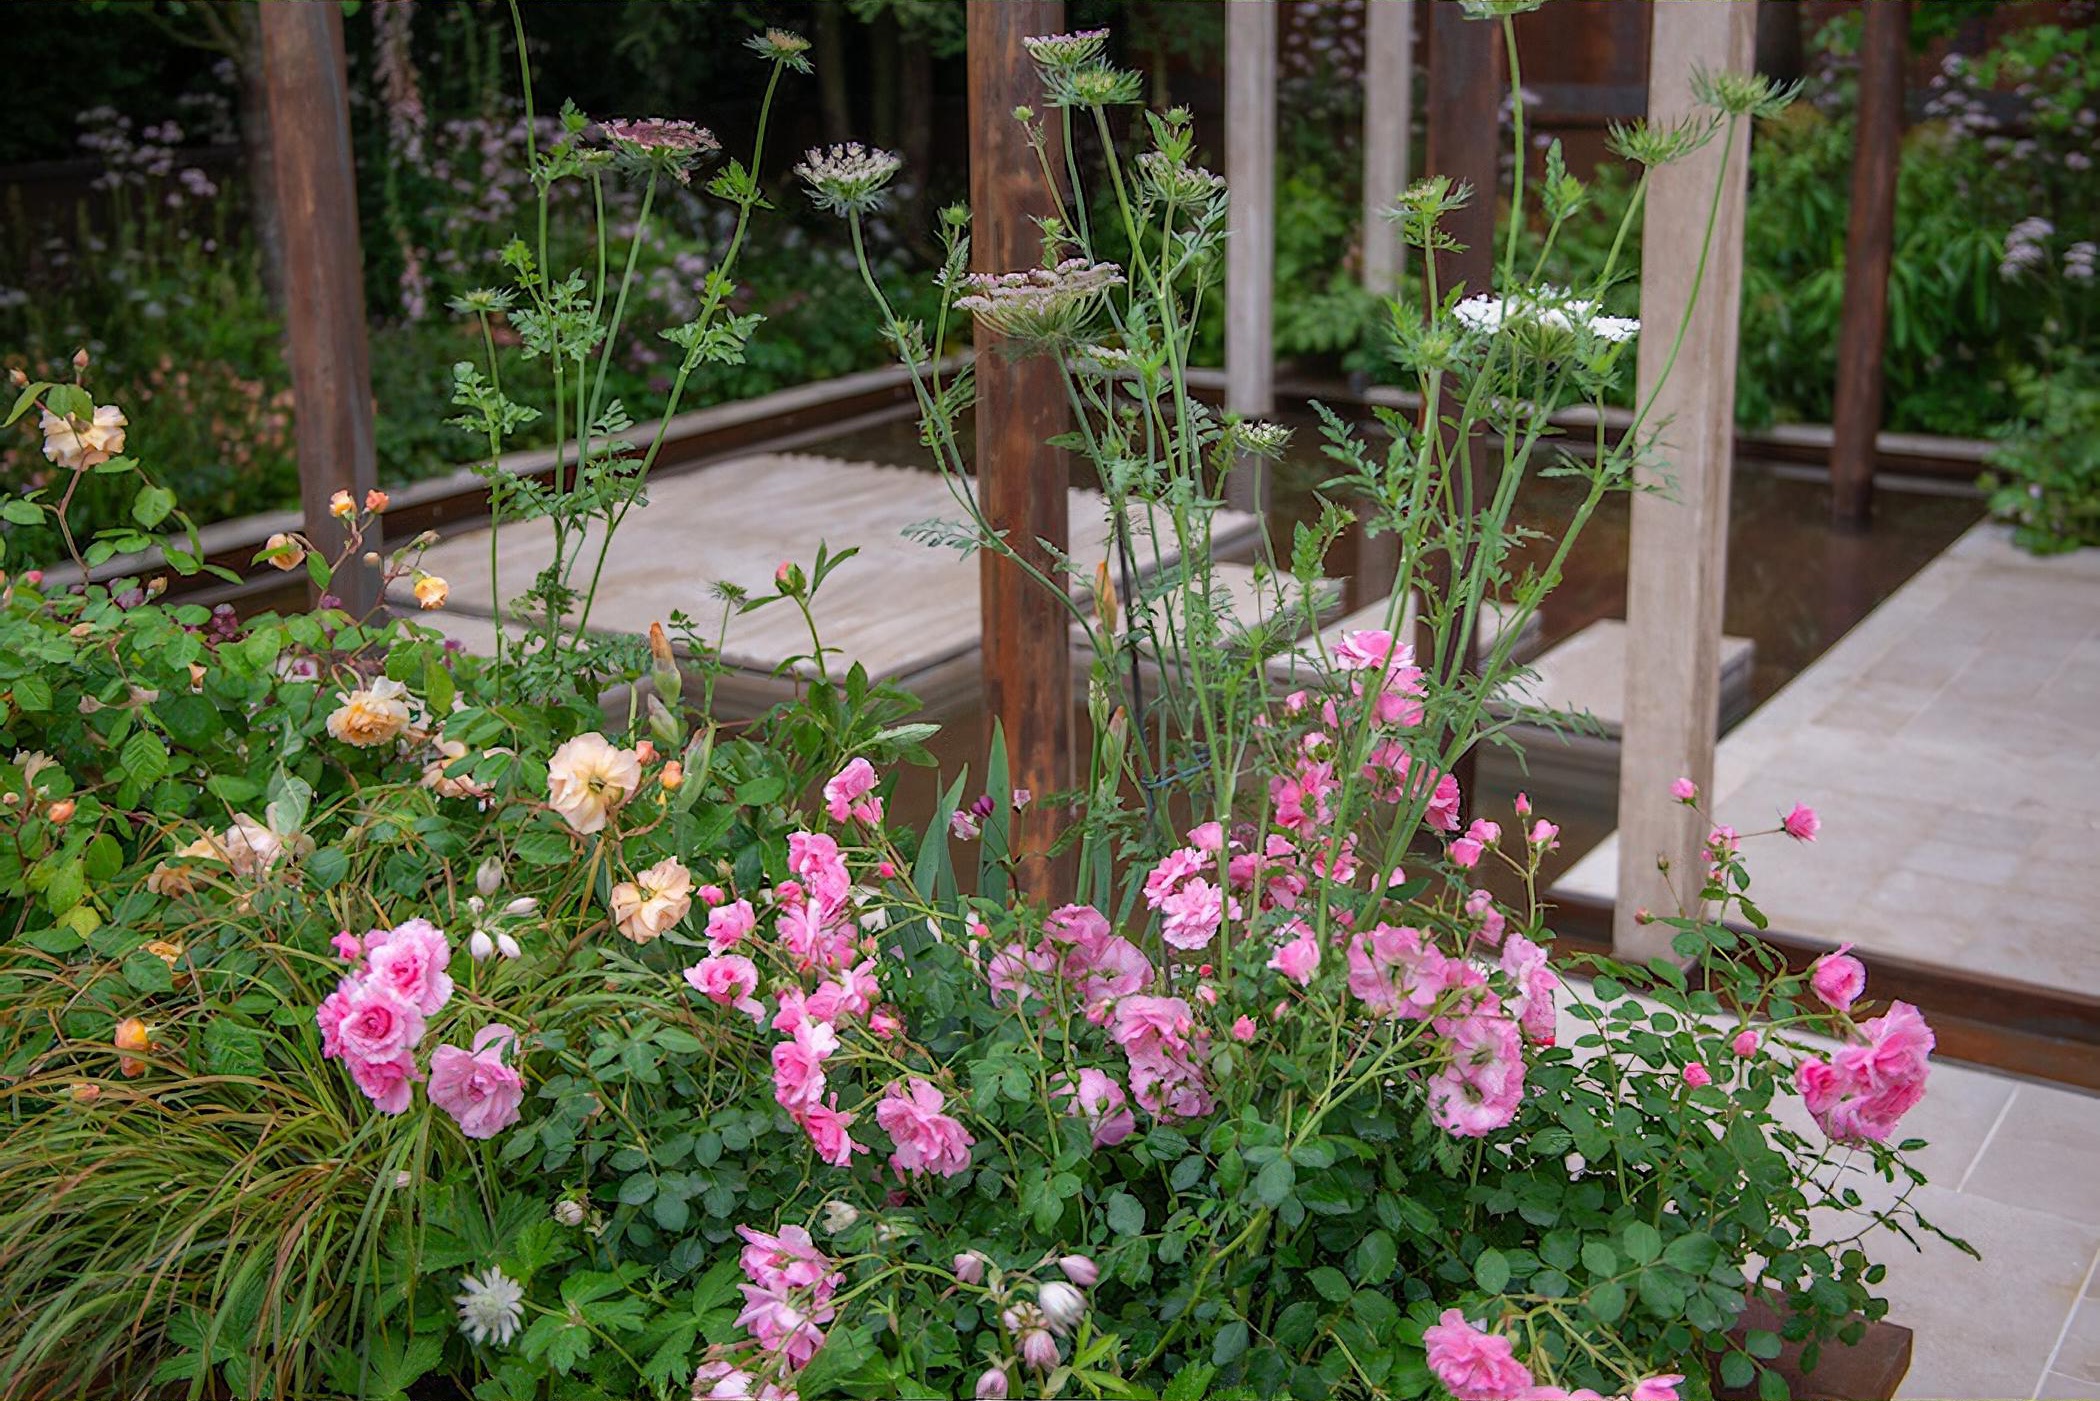 The Wedgwood Garden by garden designer Jo Thompson Chelsea Flower Show 2019